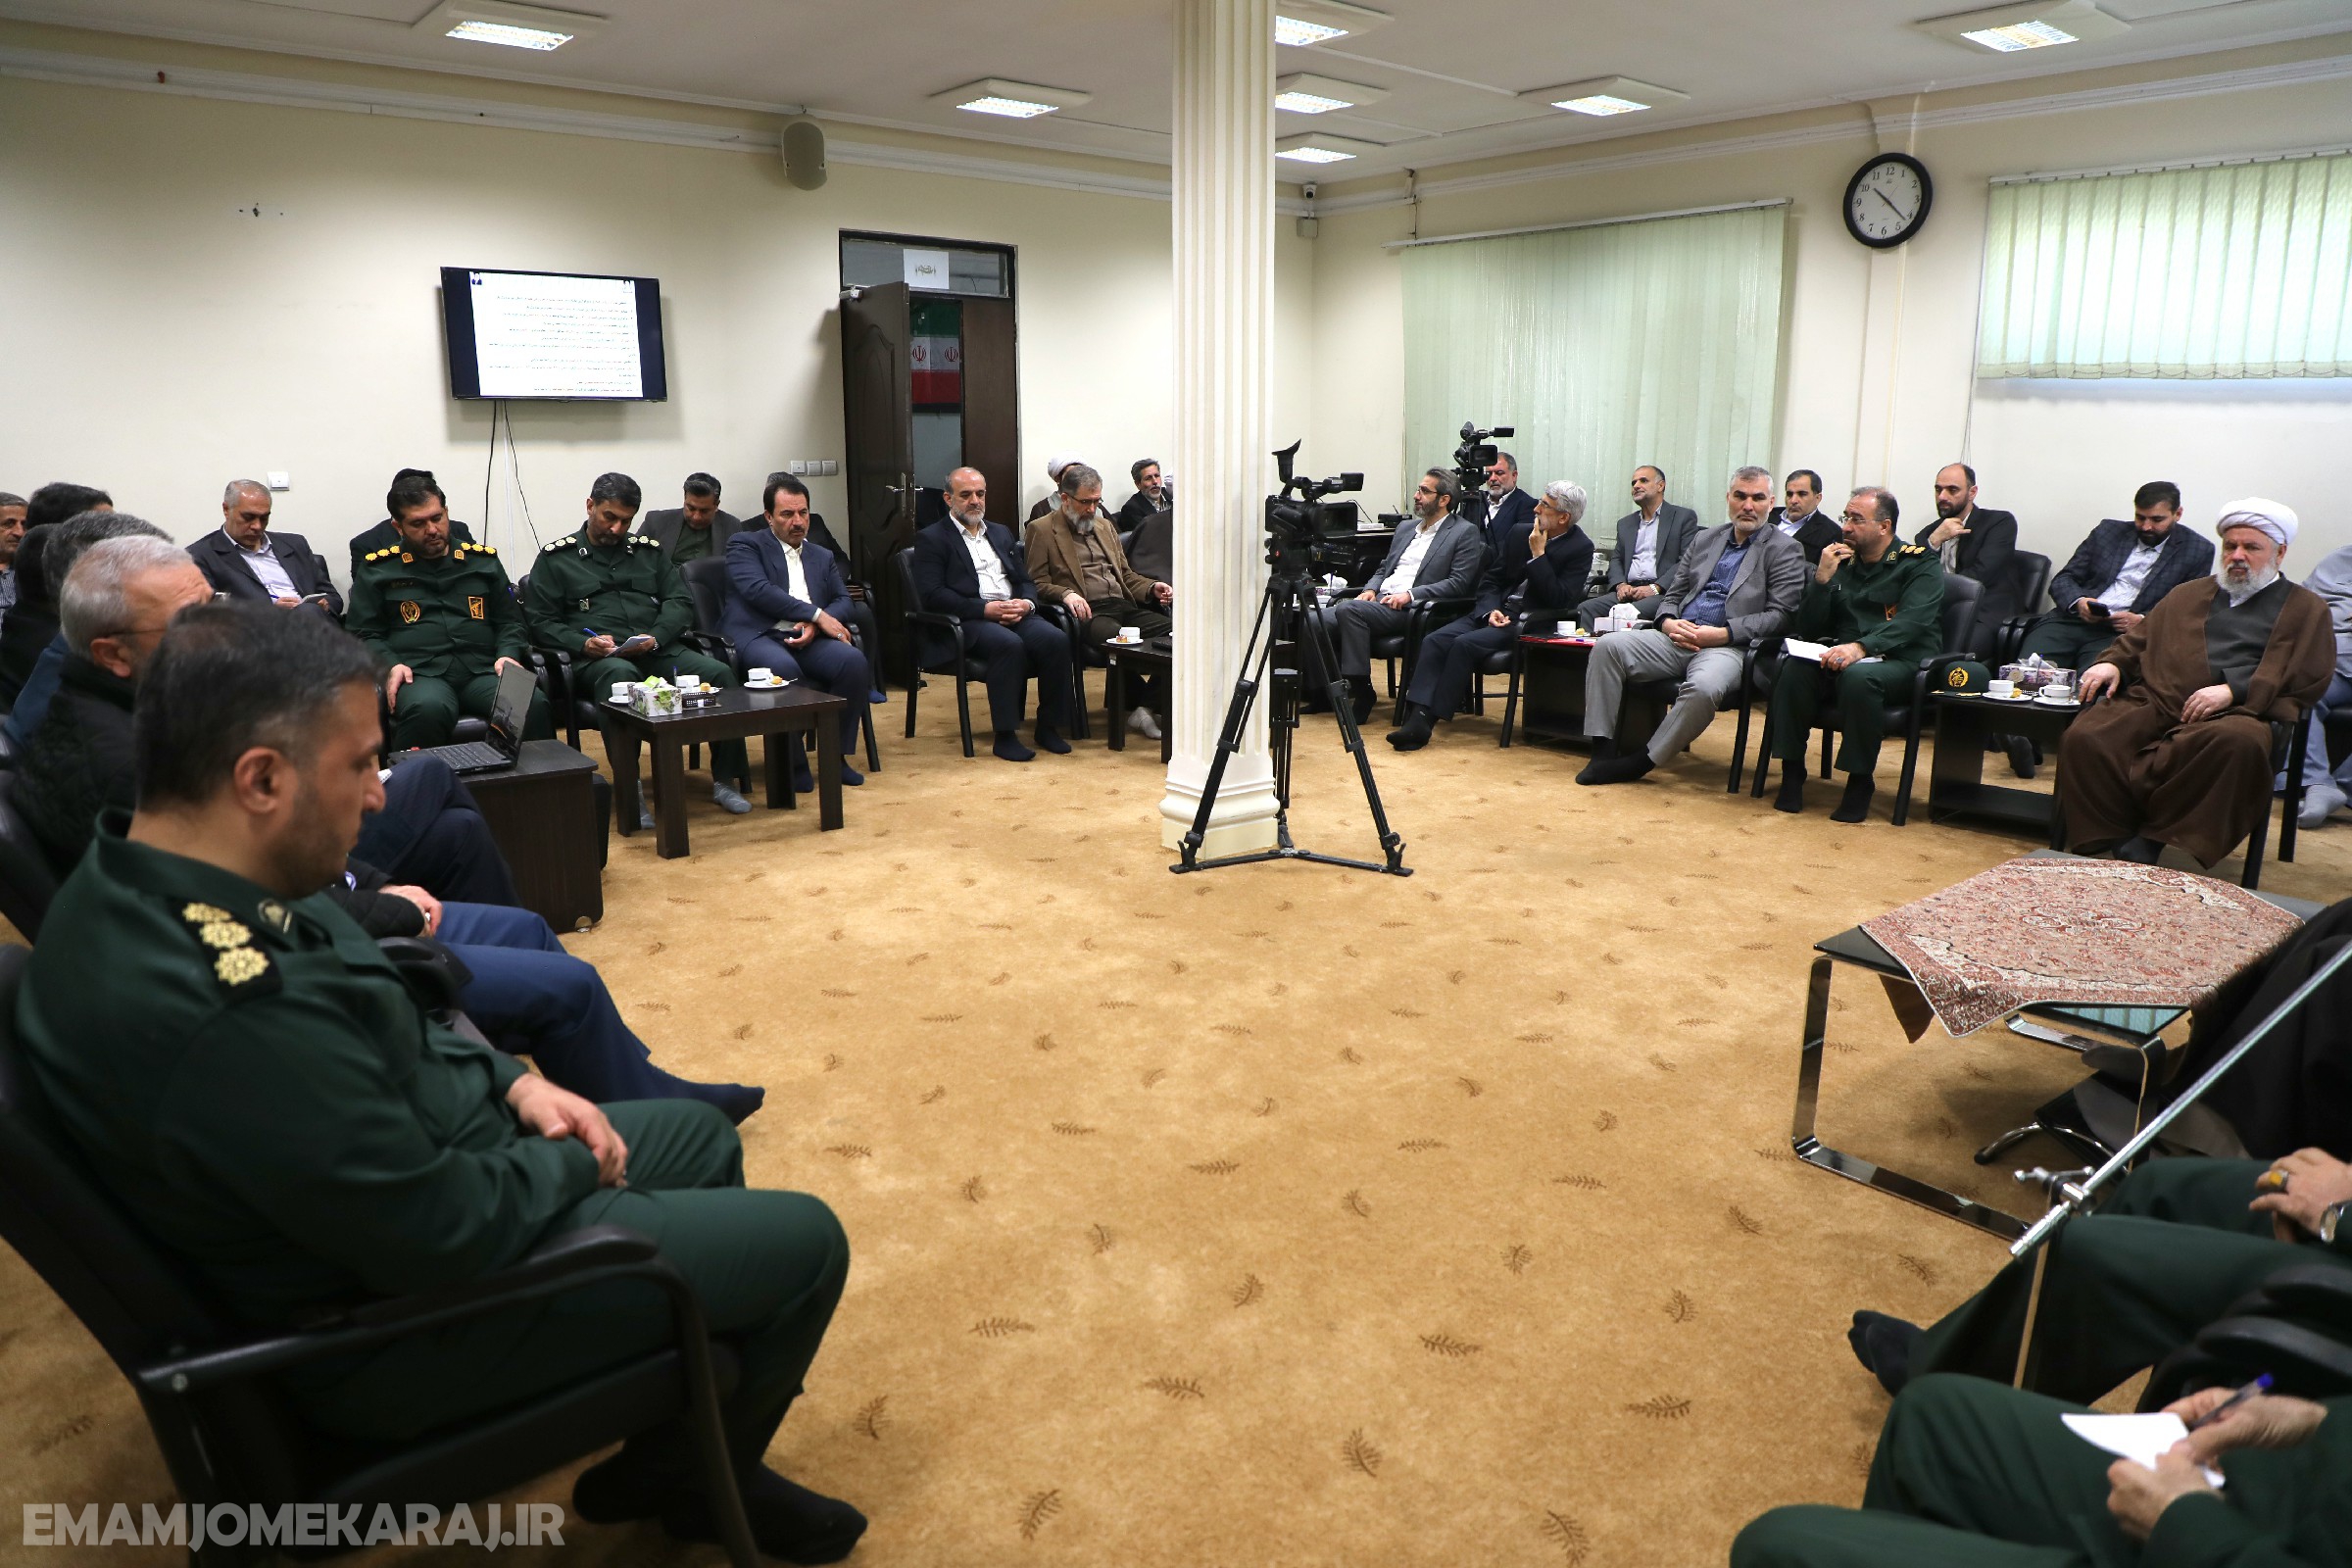 اولین جلسه شورای سیاستگذاری ستاد کنگره شهدای استان البرز برگزار شد.